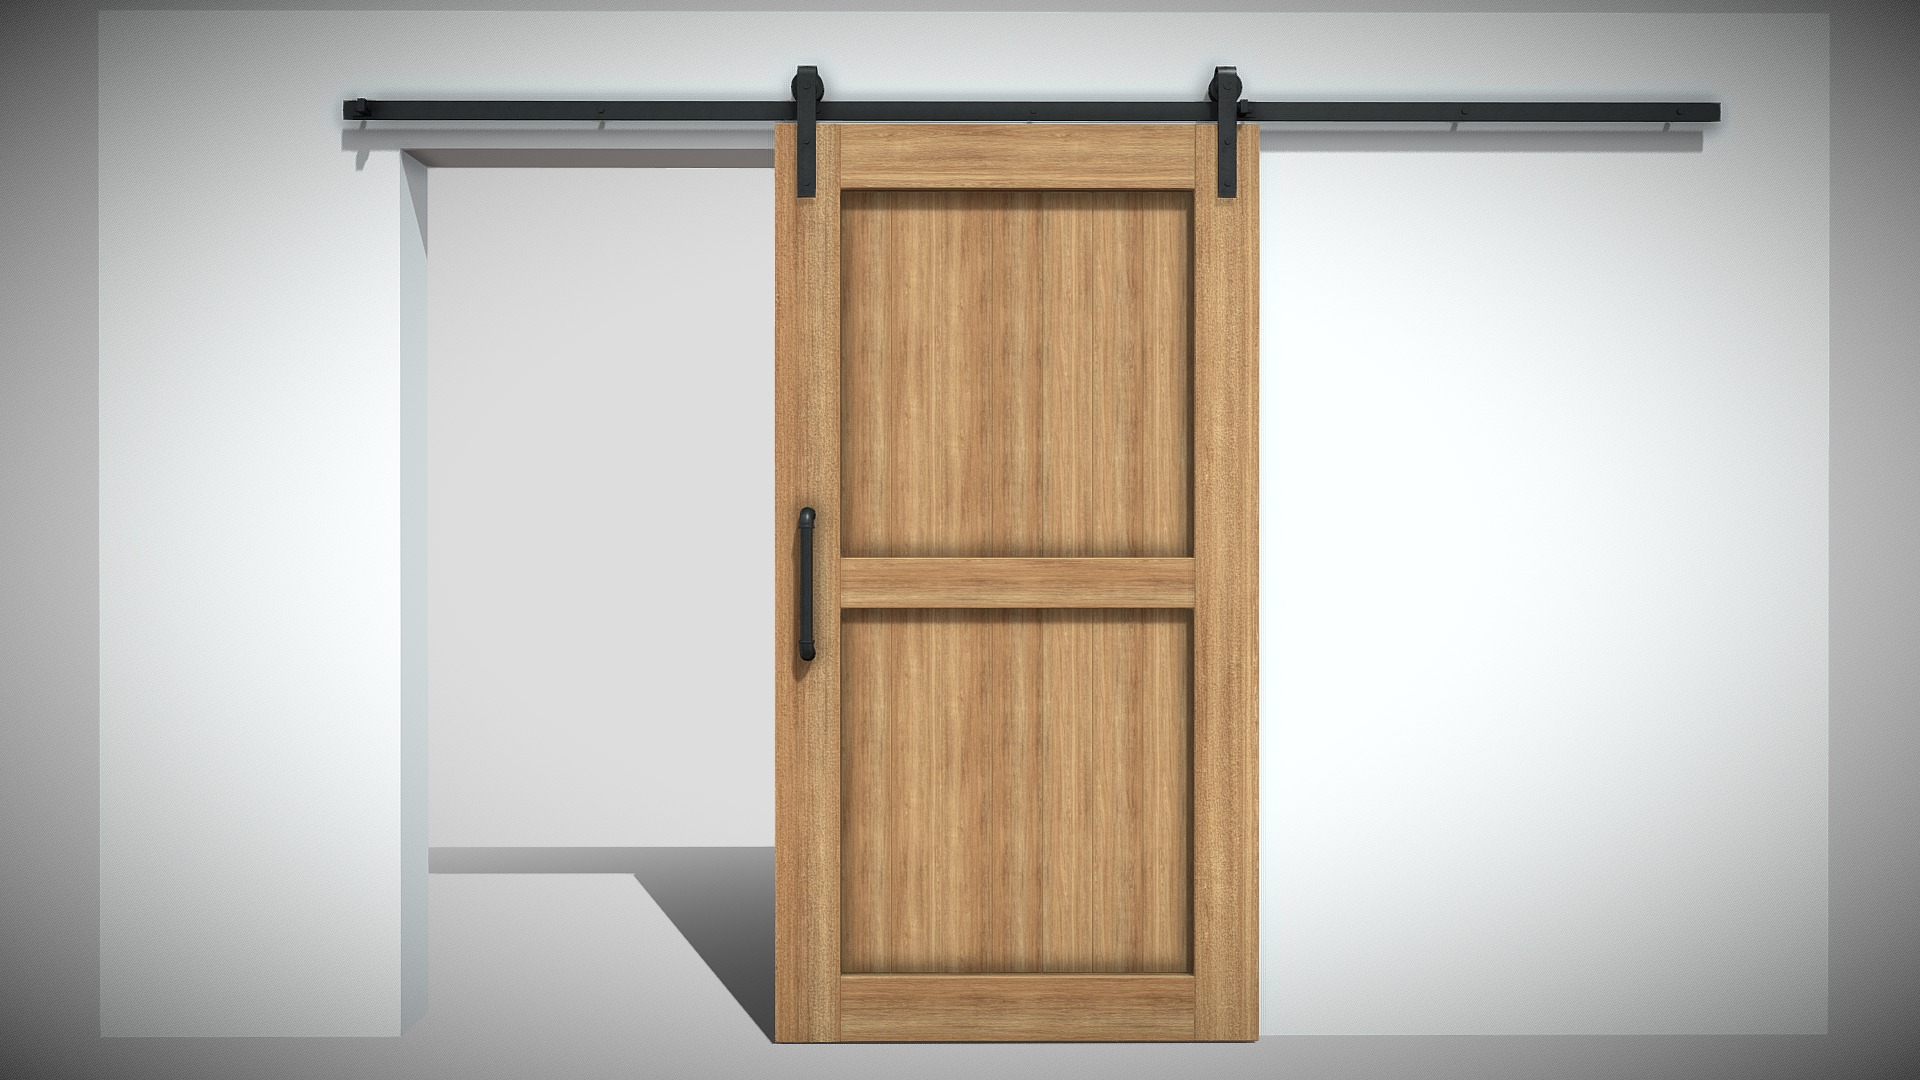 3D model Sliding Barn Door (Blend File, OBJ, DAE) - This is a 3D model of the Sliding Barn Door (Blend File, OBJ, DAE). The 3D model is about a wooden cabinet in a room.